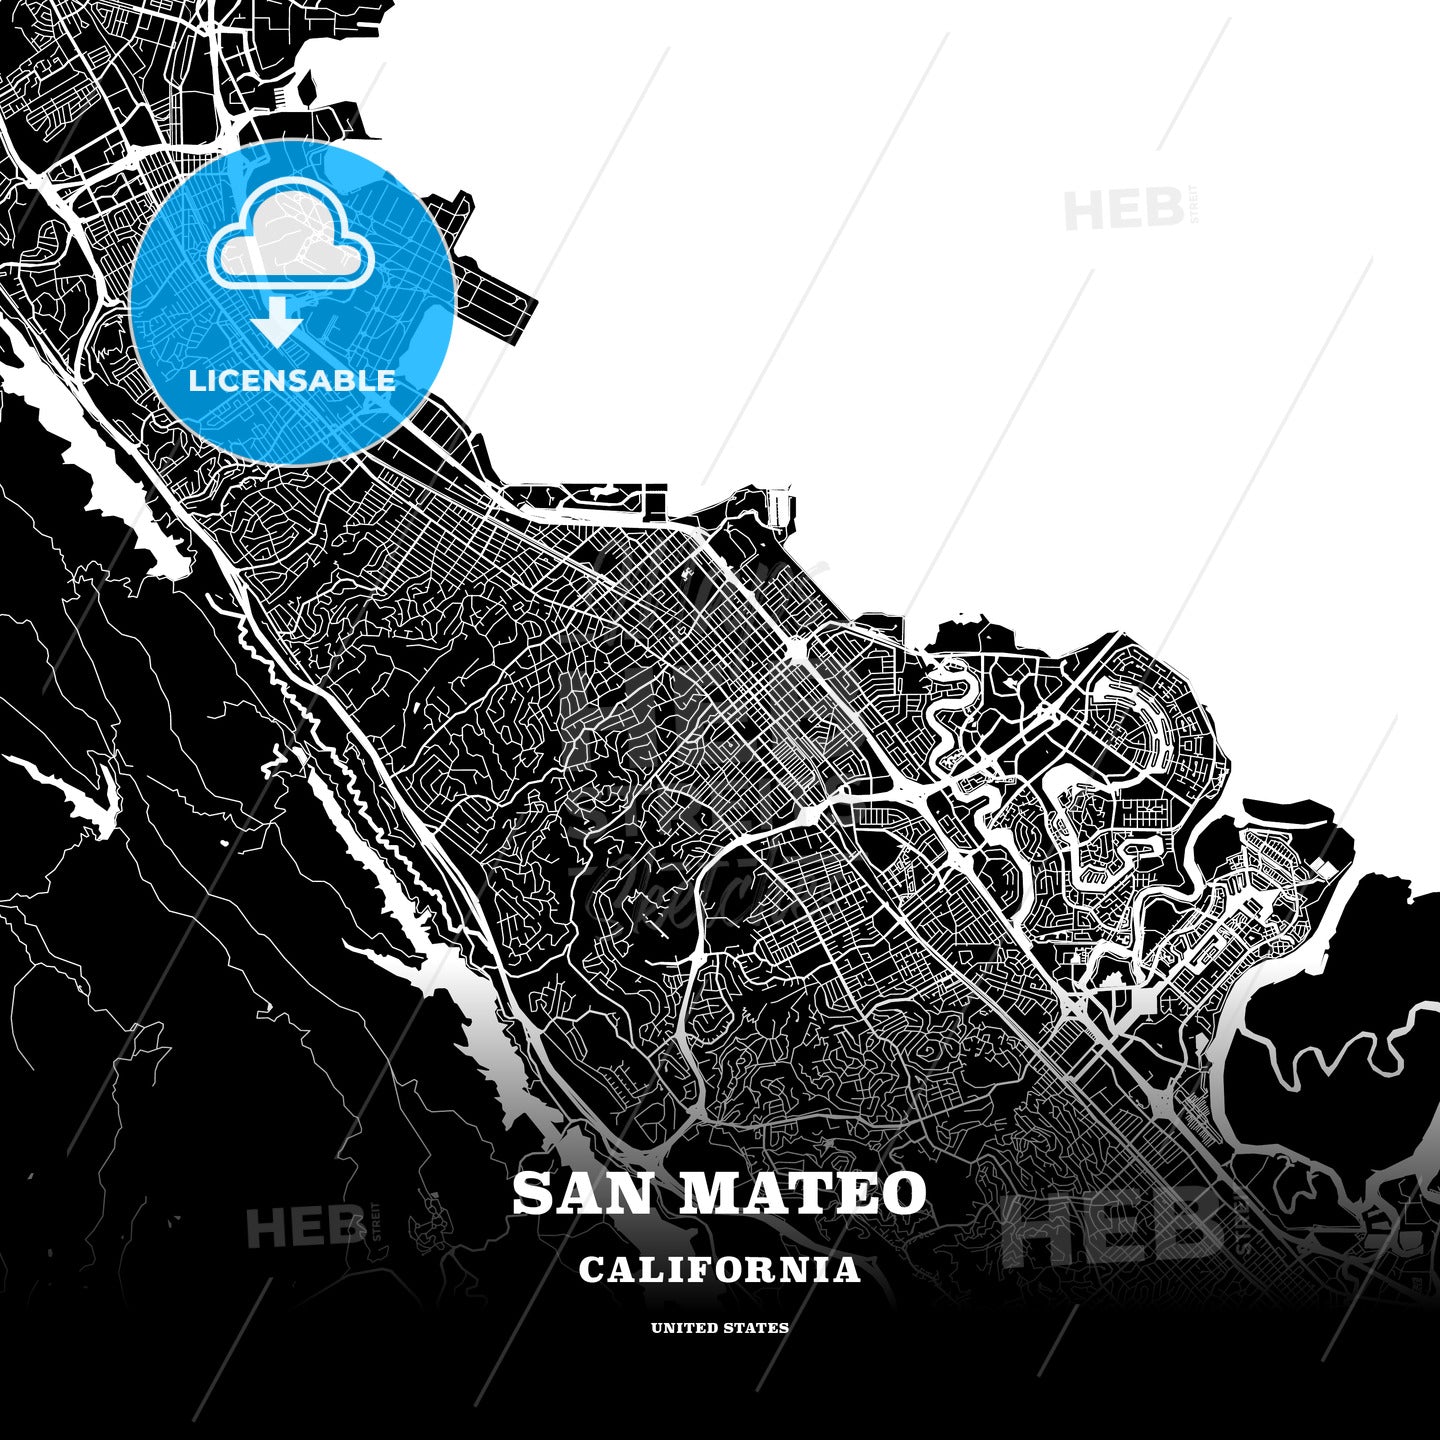 San Mateo, California, USA map